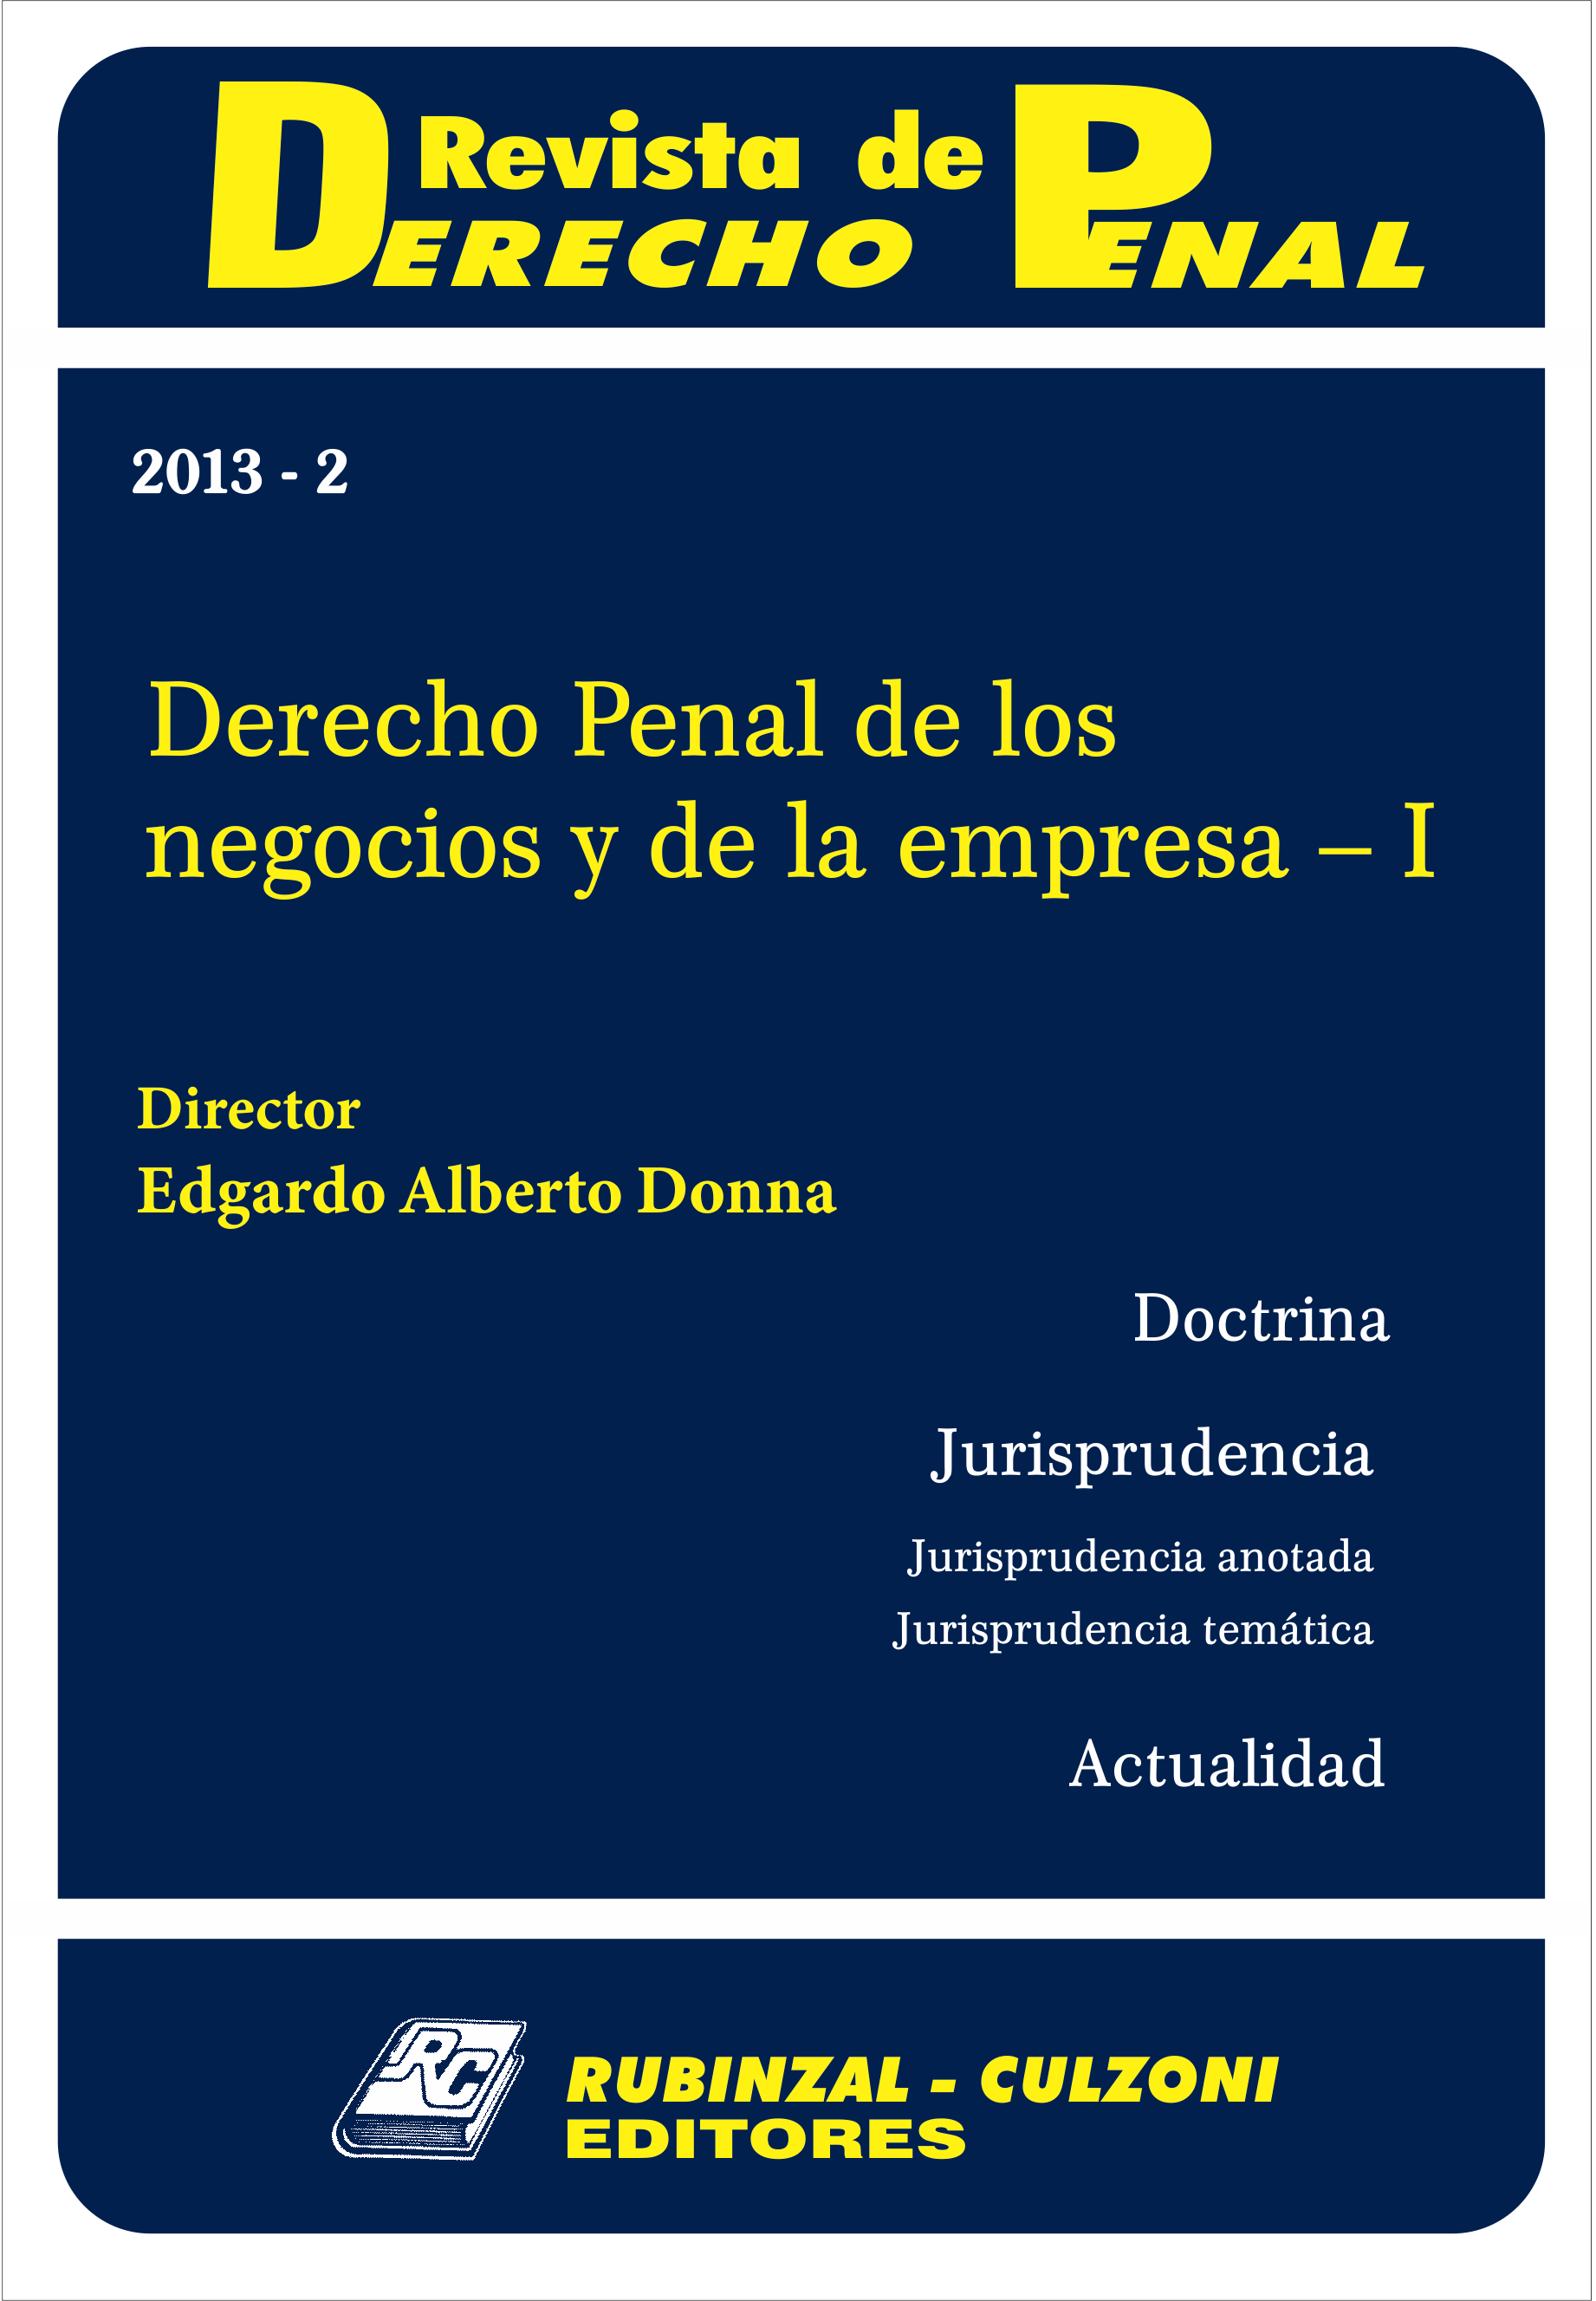 Revista de Derecho Penal - Derecho Penal de los negocios y de la empresa - I